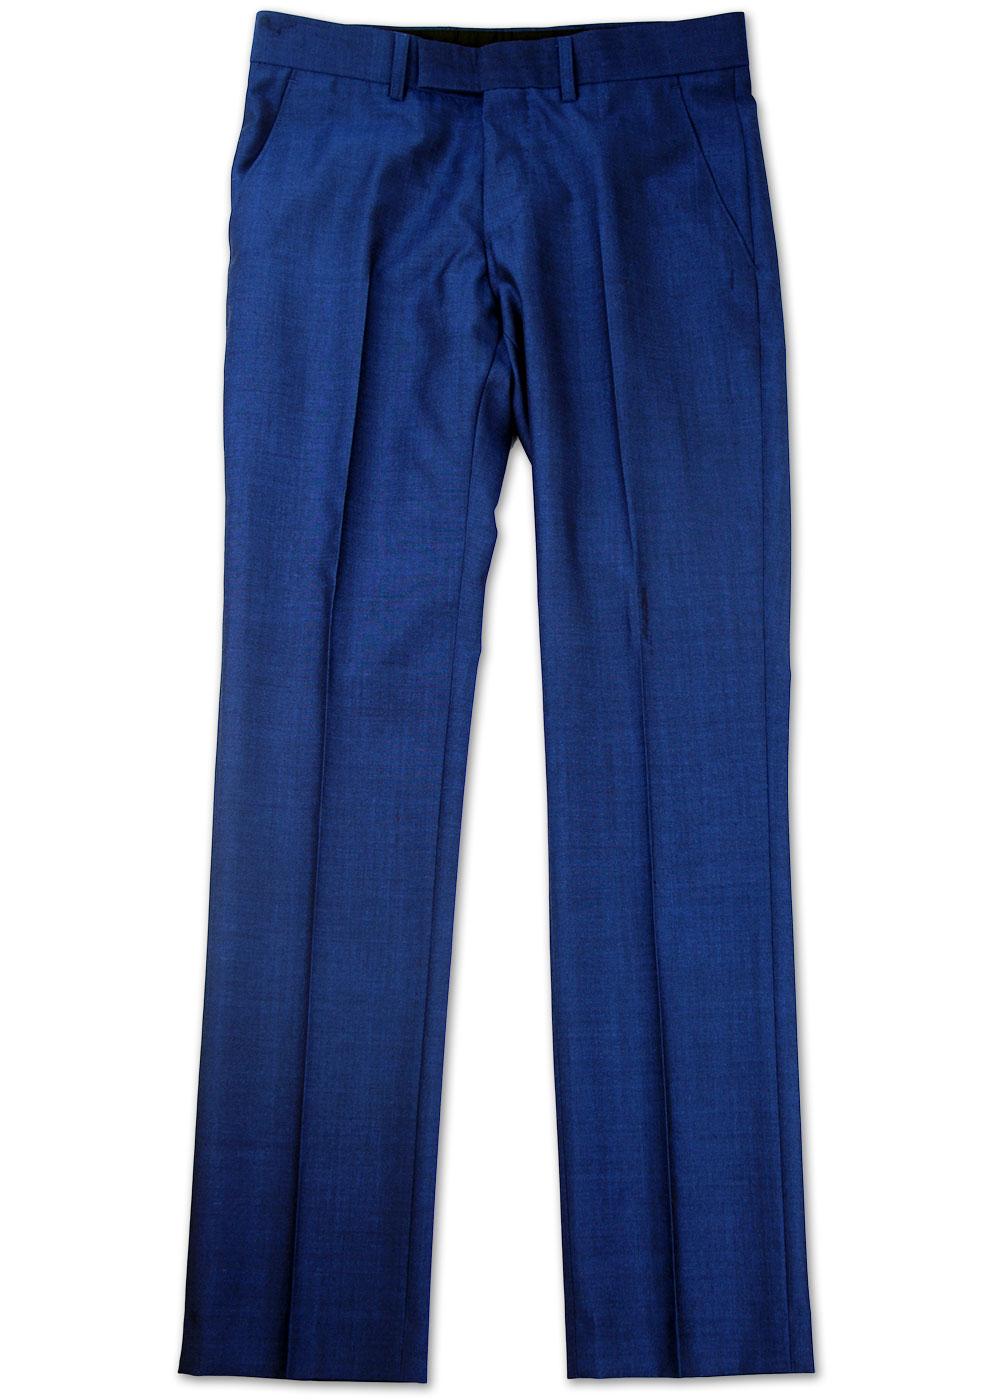 MADCAP ENGLAND Mod Slim Mohair Tonic Suit Trousers